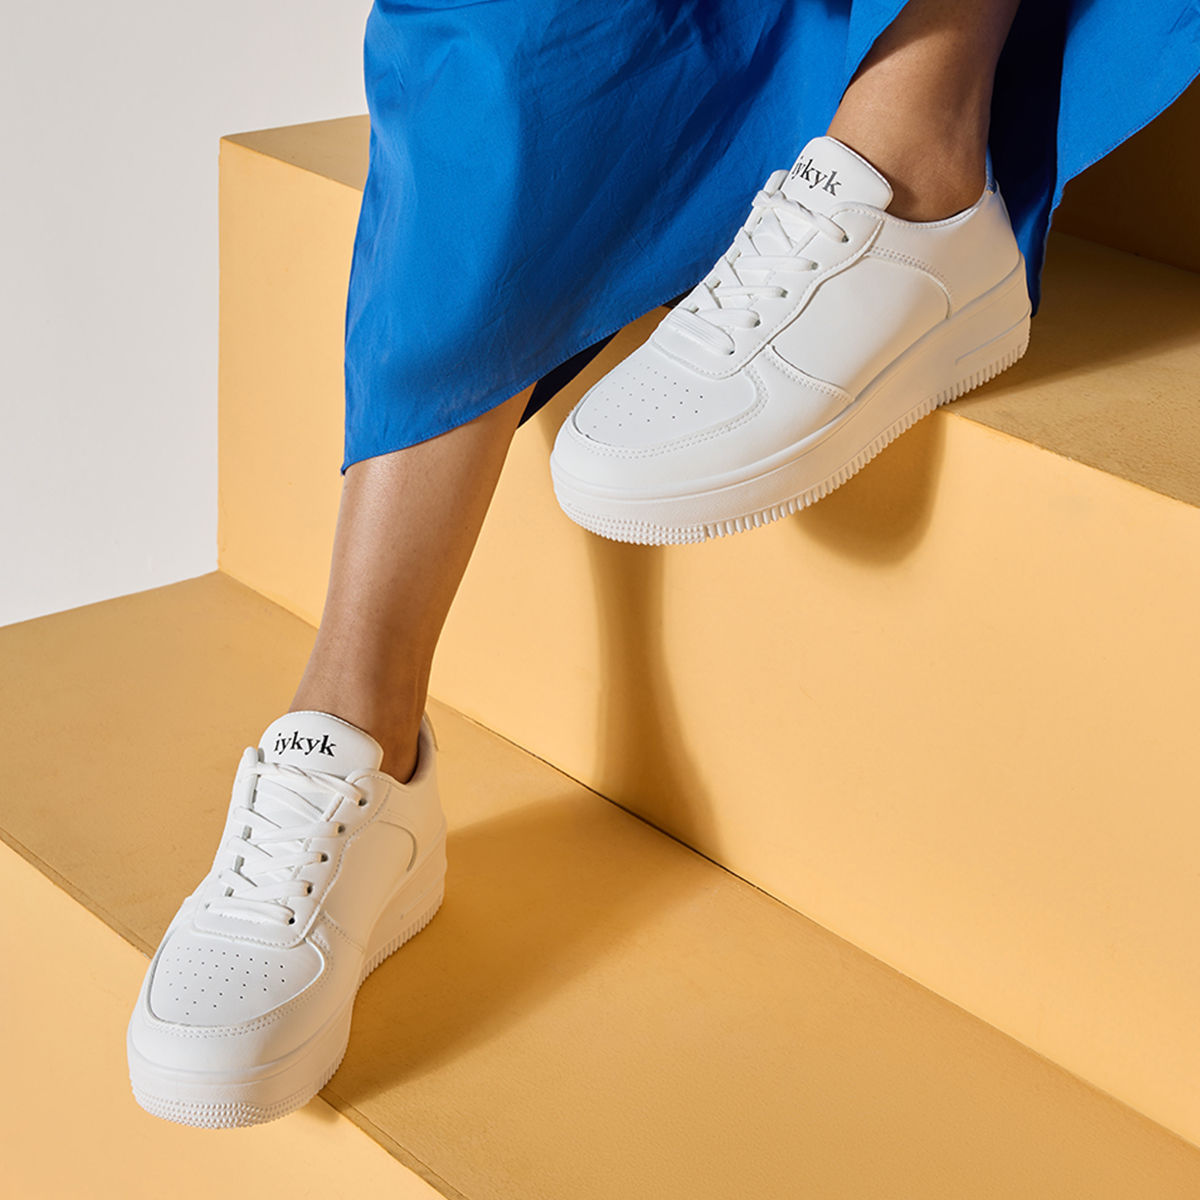 Nike SB Ishod Premium White & Black Skate Shoes | Zumiez